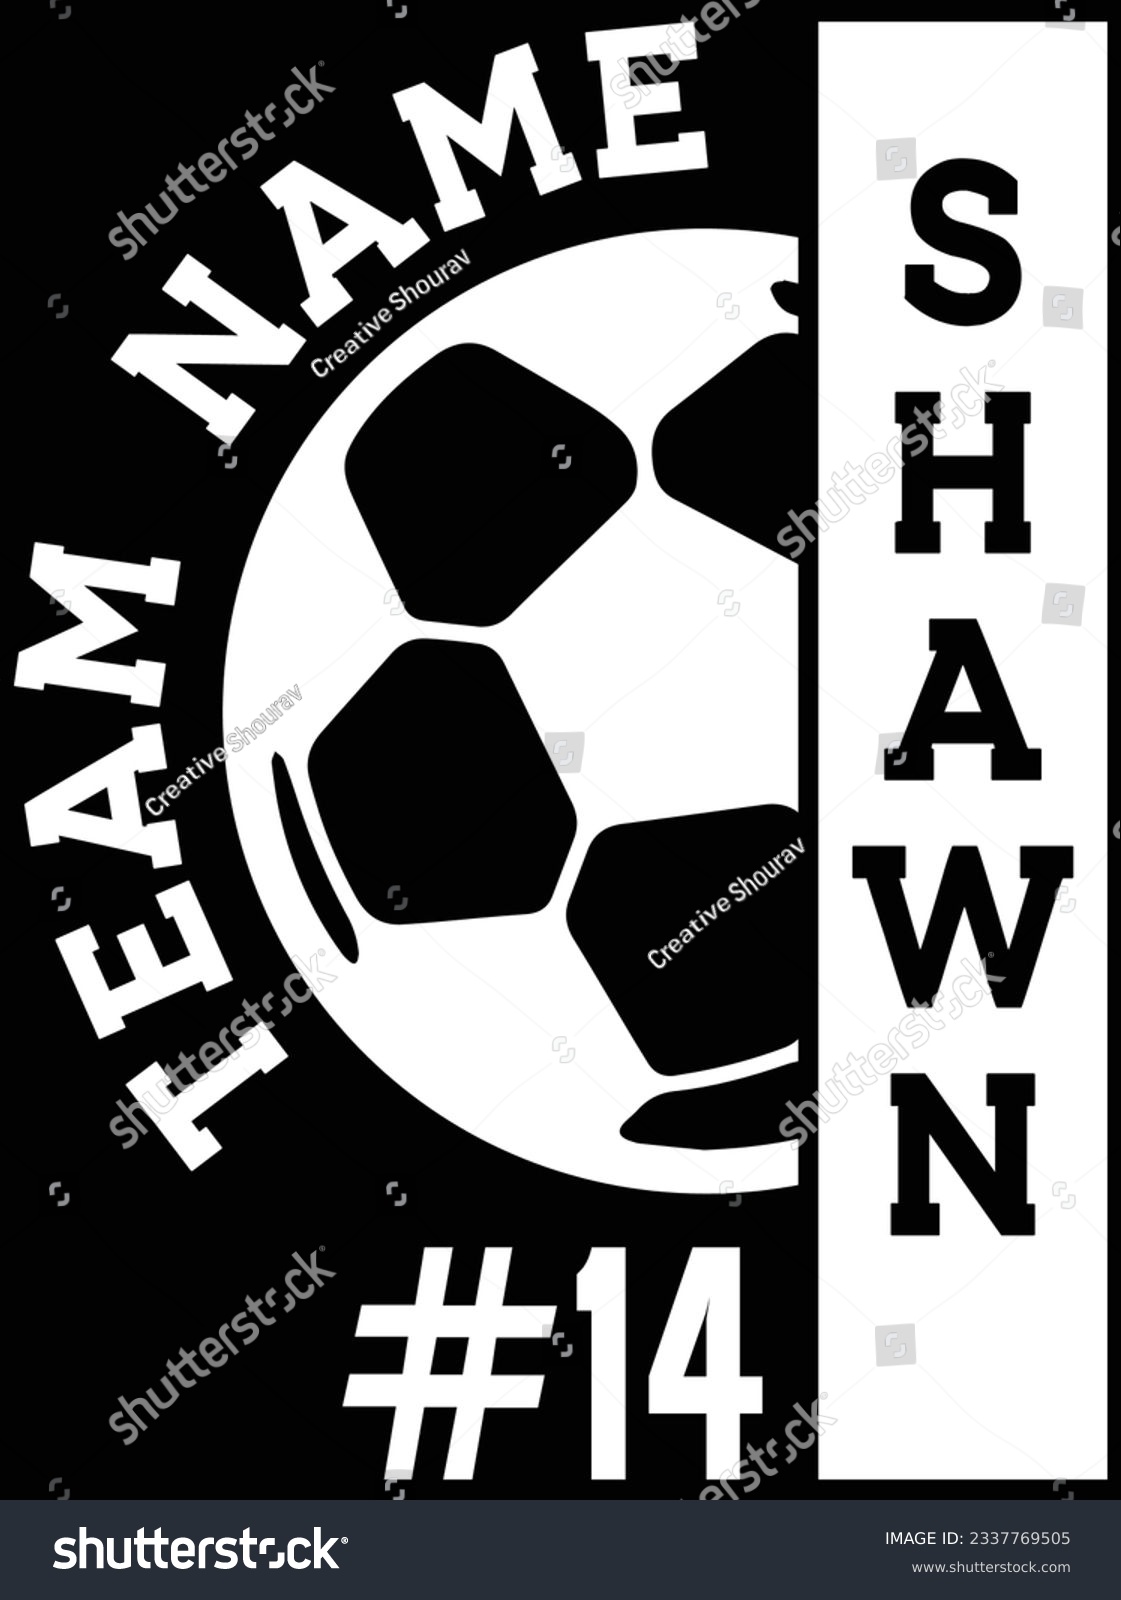 SVG of Team name shawn vector art design, eps file. design file for t-shirt. SVG, EPS cuttable design file svg